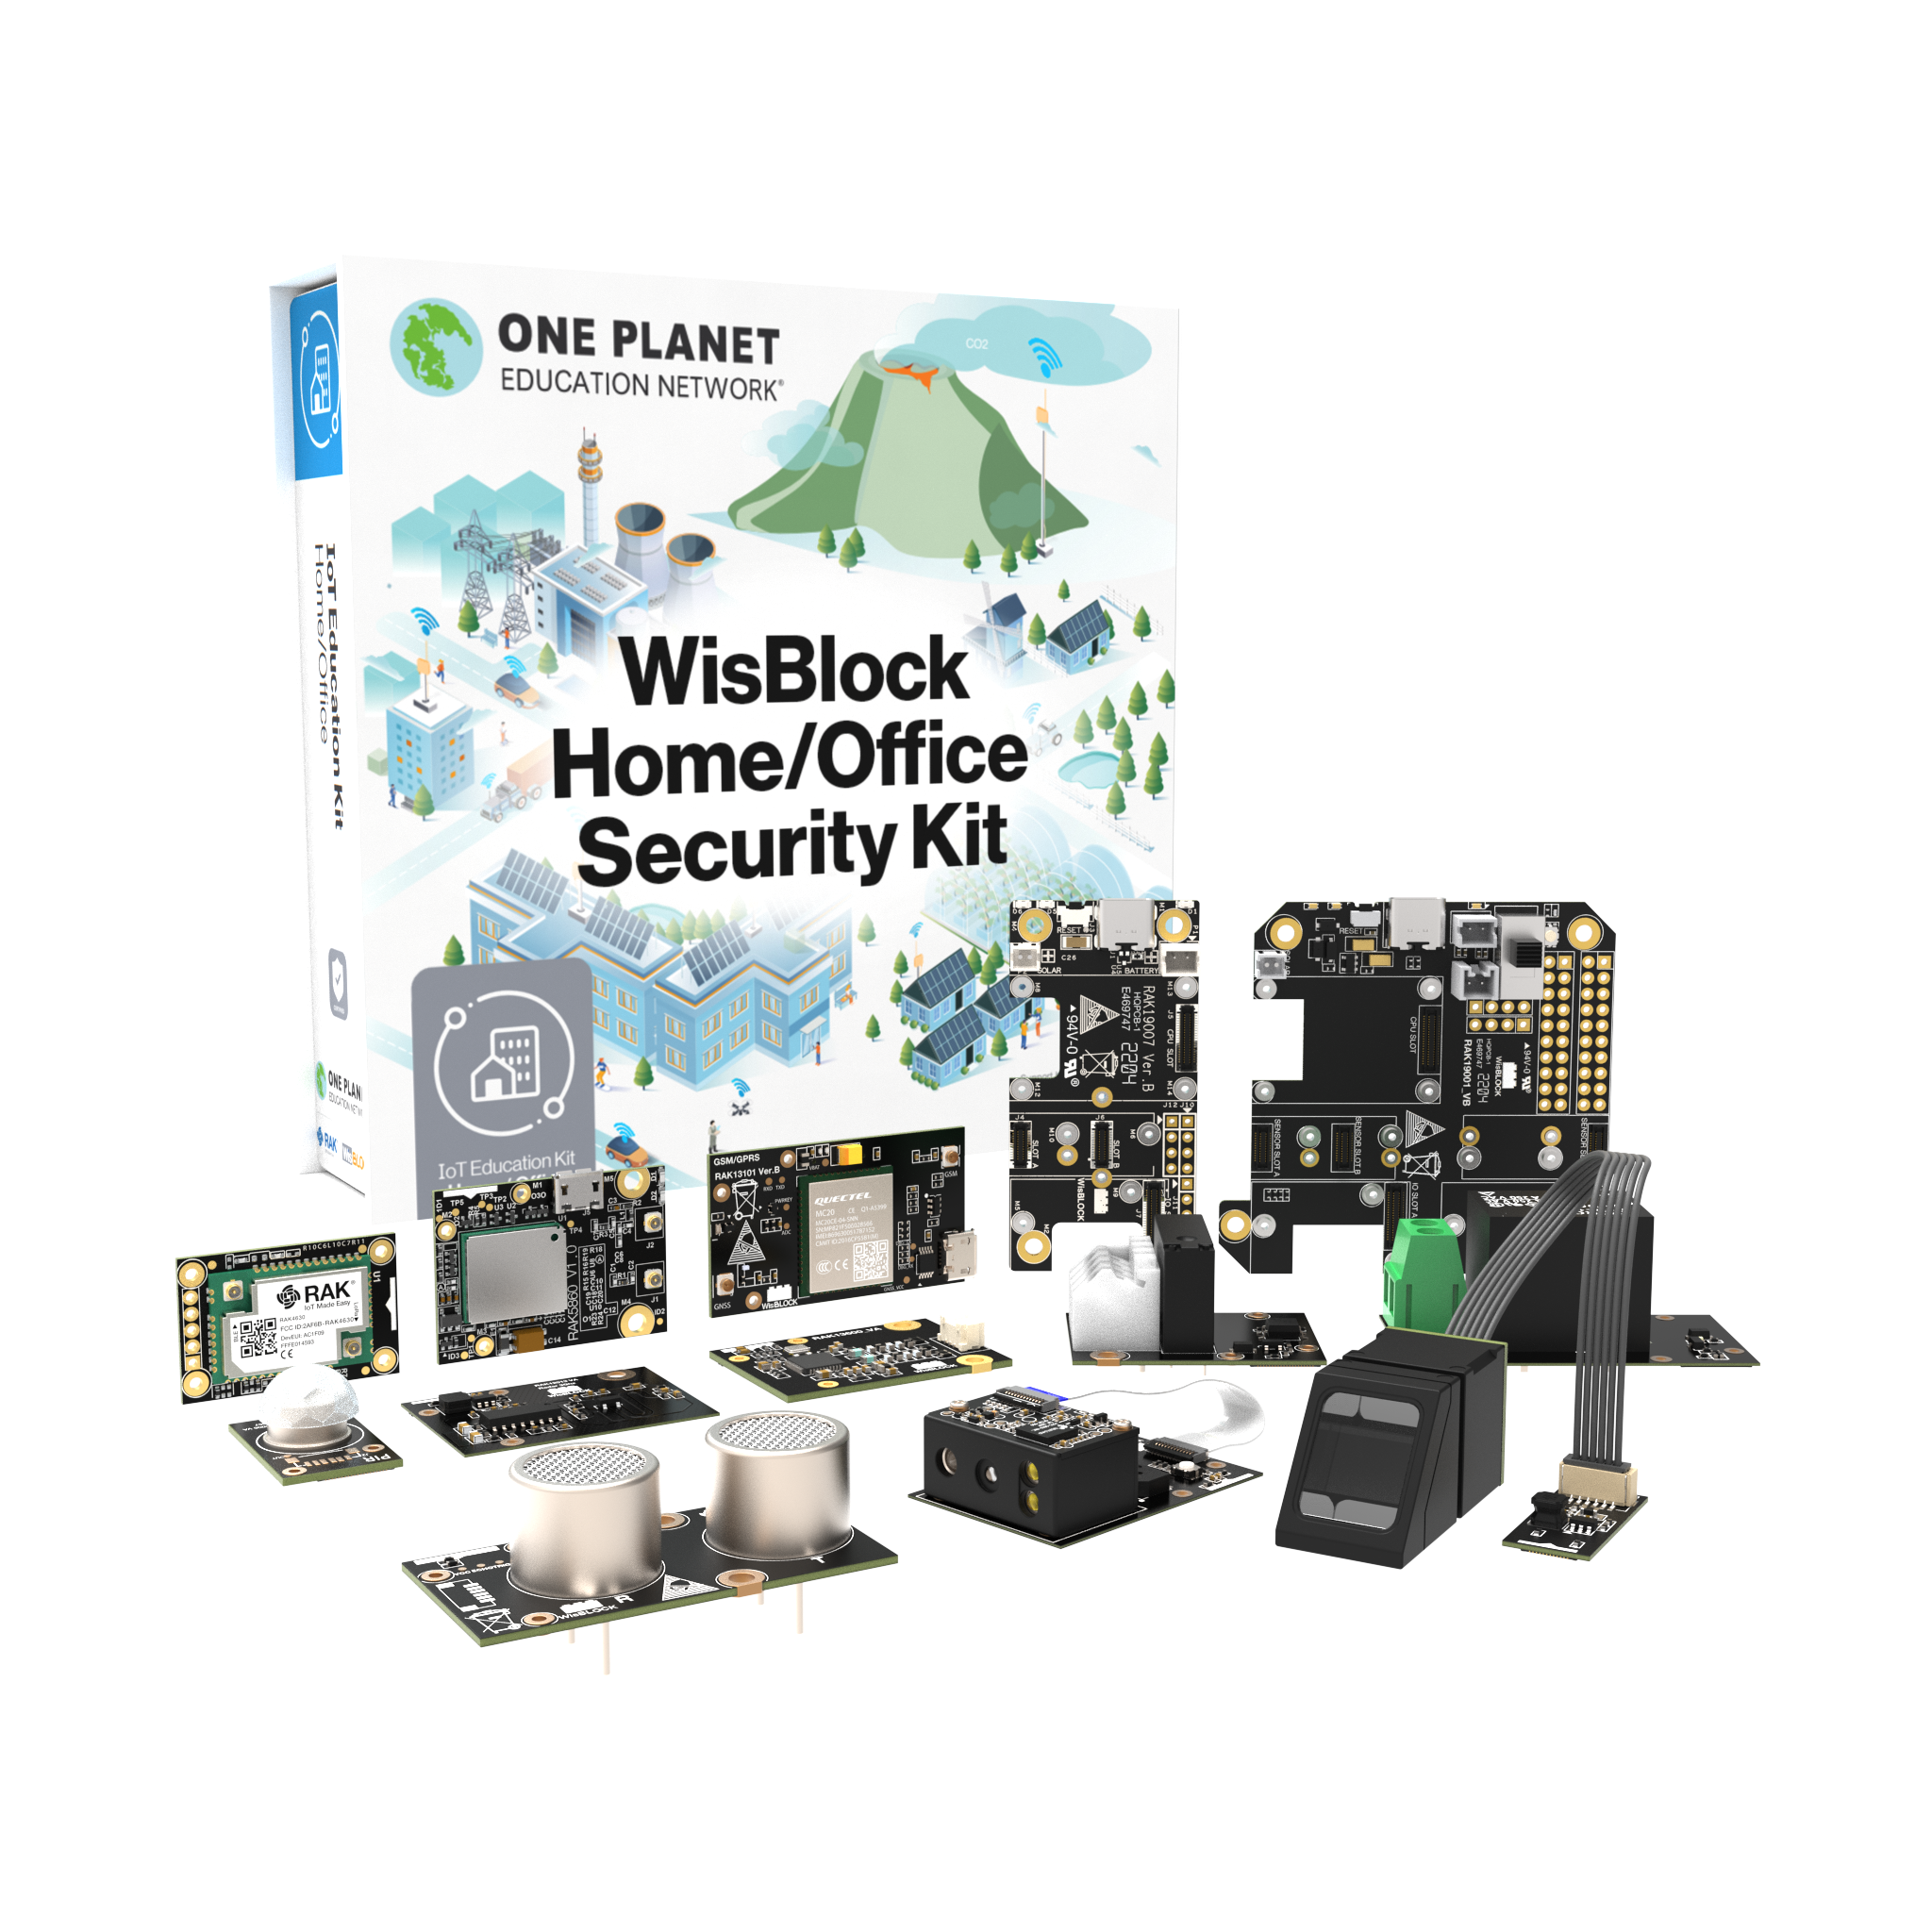 WisBlock Indoor Location Tracker Kit